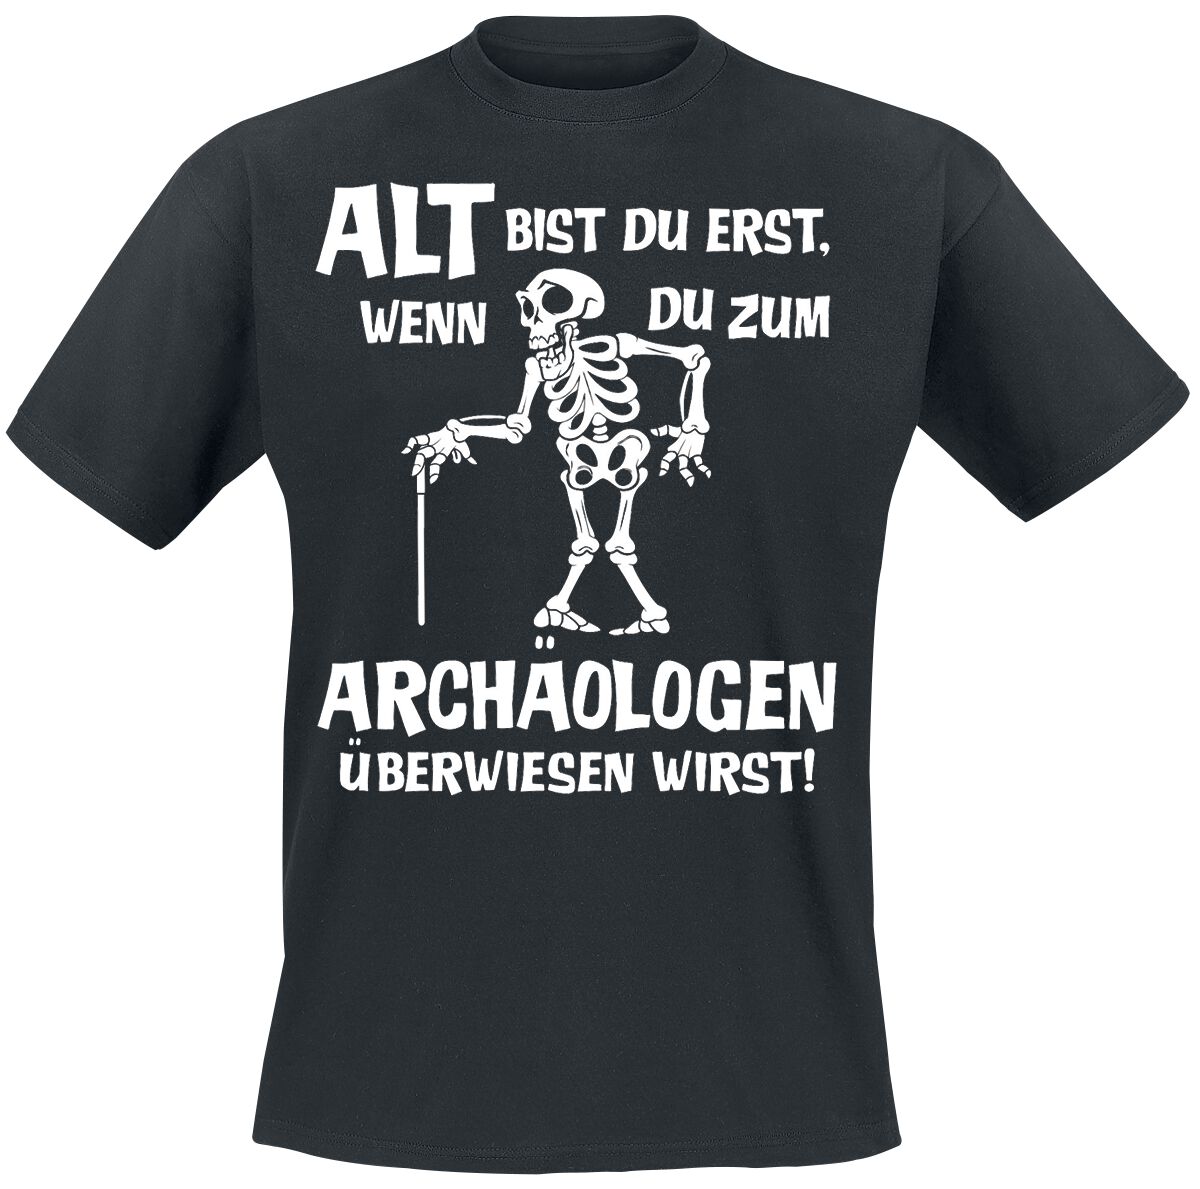 Sprüche T-Shirt - Alt bist du erst, wenn du zum Archäologen überwiesen wirst! - M bis 4XL - für Männer - Größe 4XL - schwarz